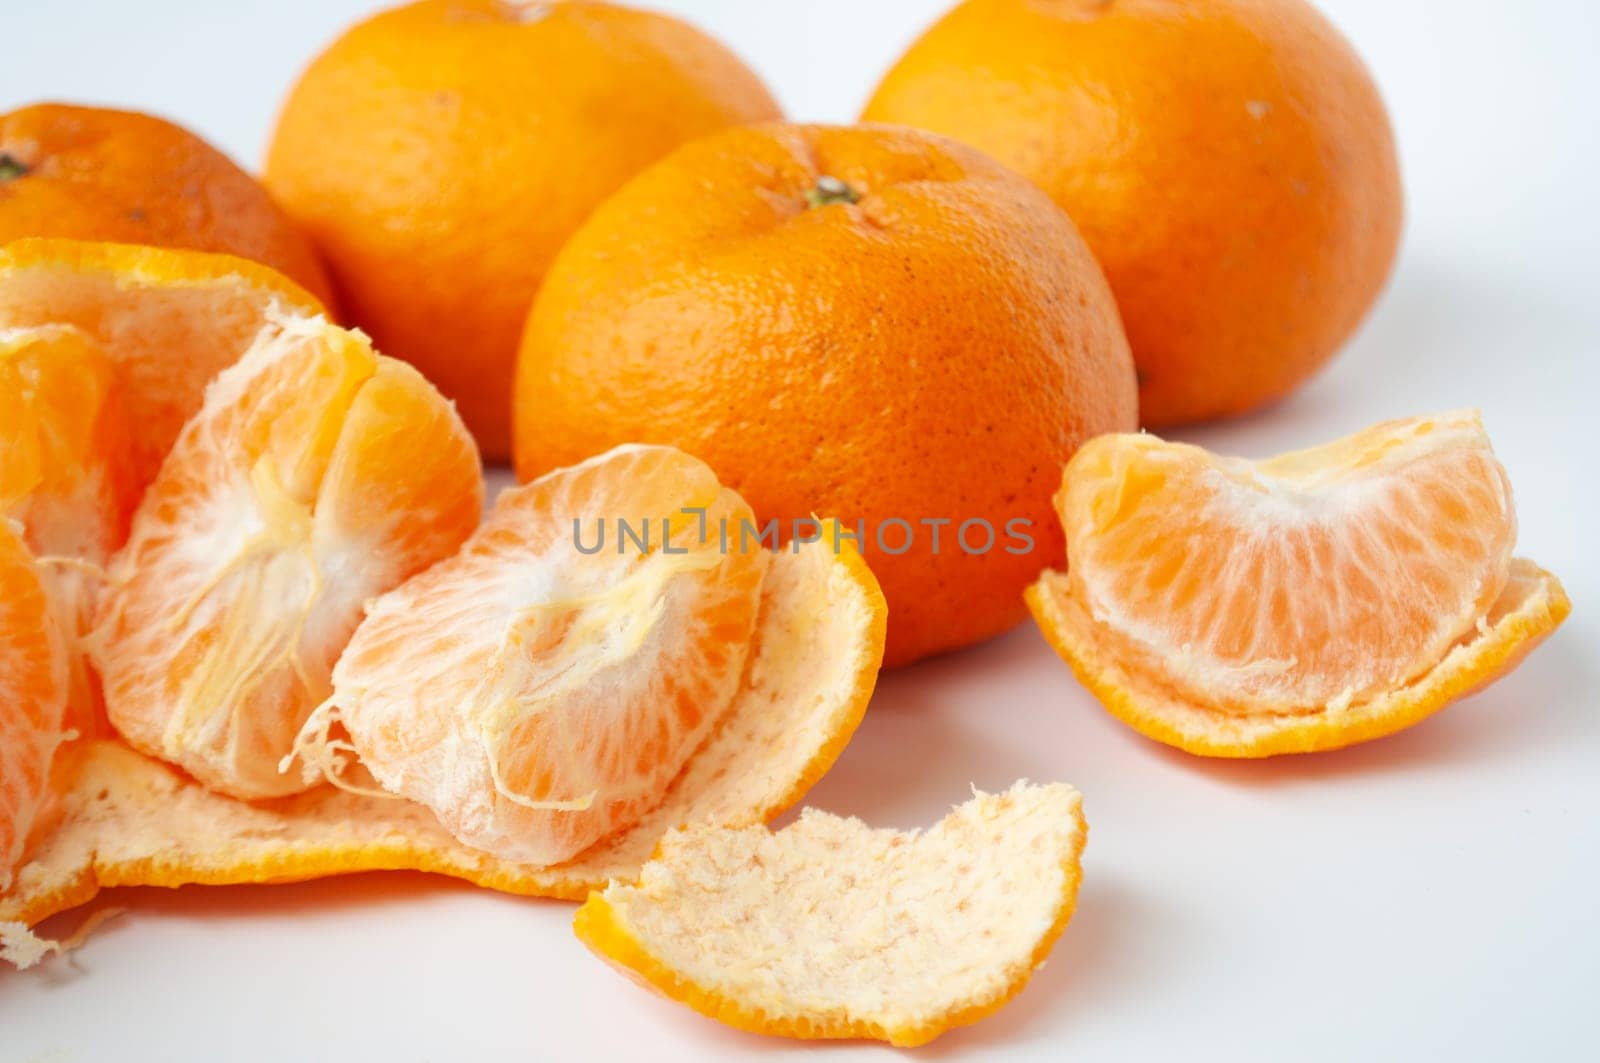 Mandarin oranges on white cover background.